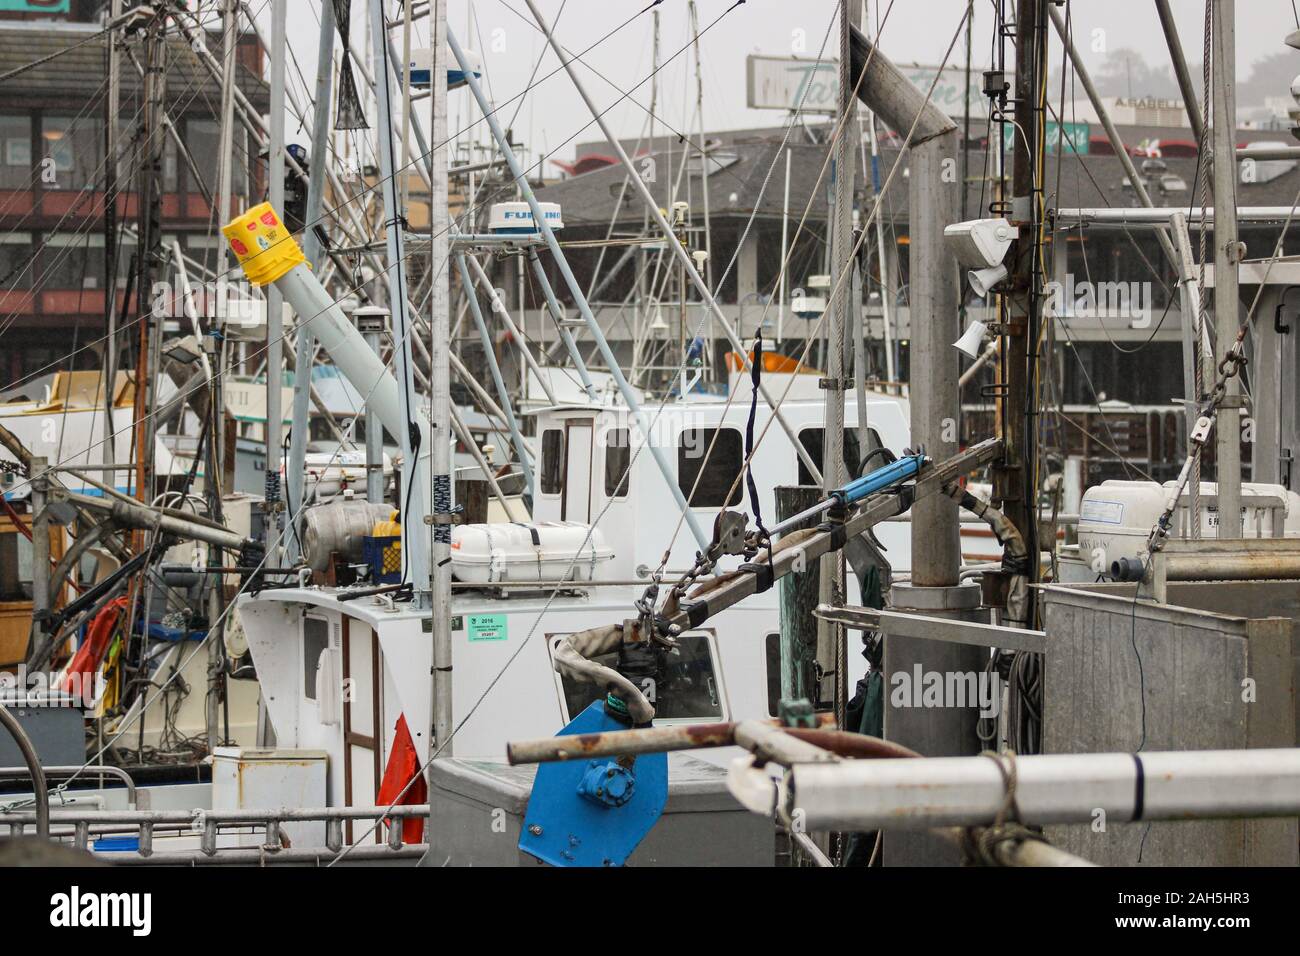 Bateaux de pêche au Fisherman's Wharf un jour de pluie dans la région de San Francisco, États-Unis d'Amérique Banque D'Images